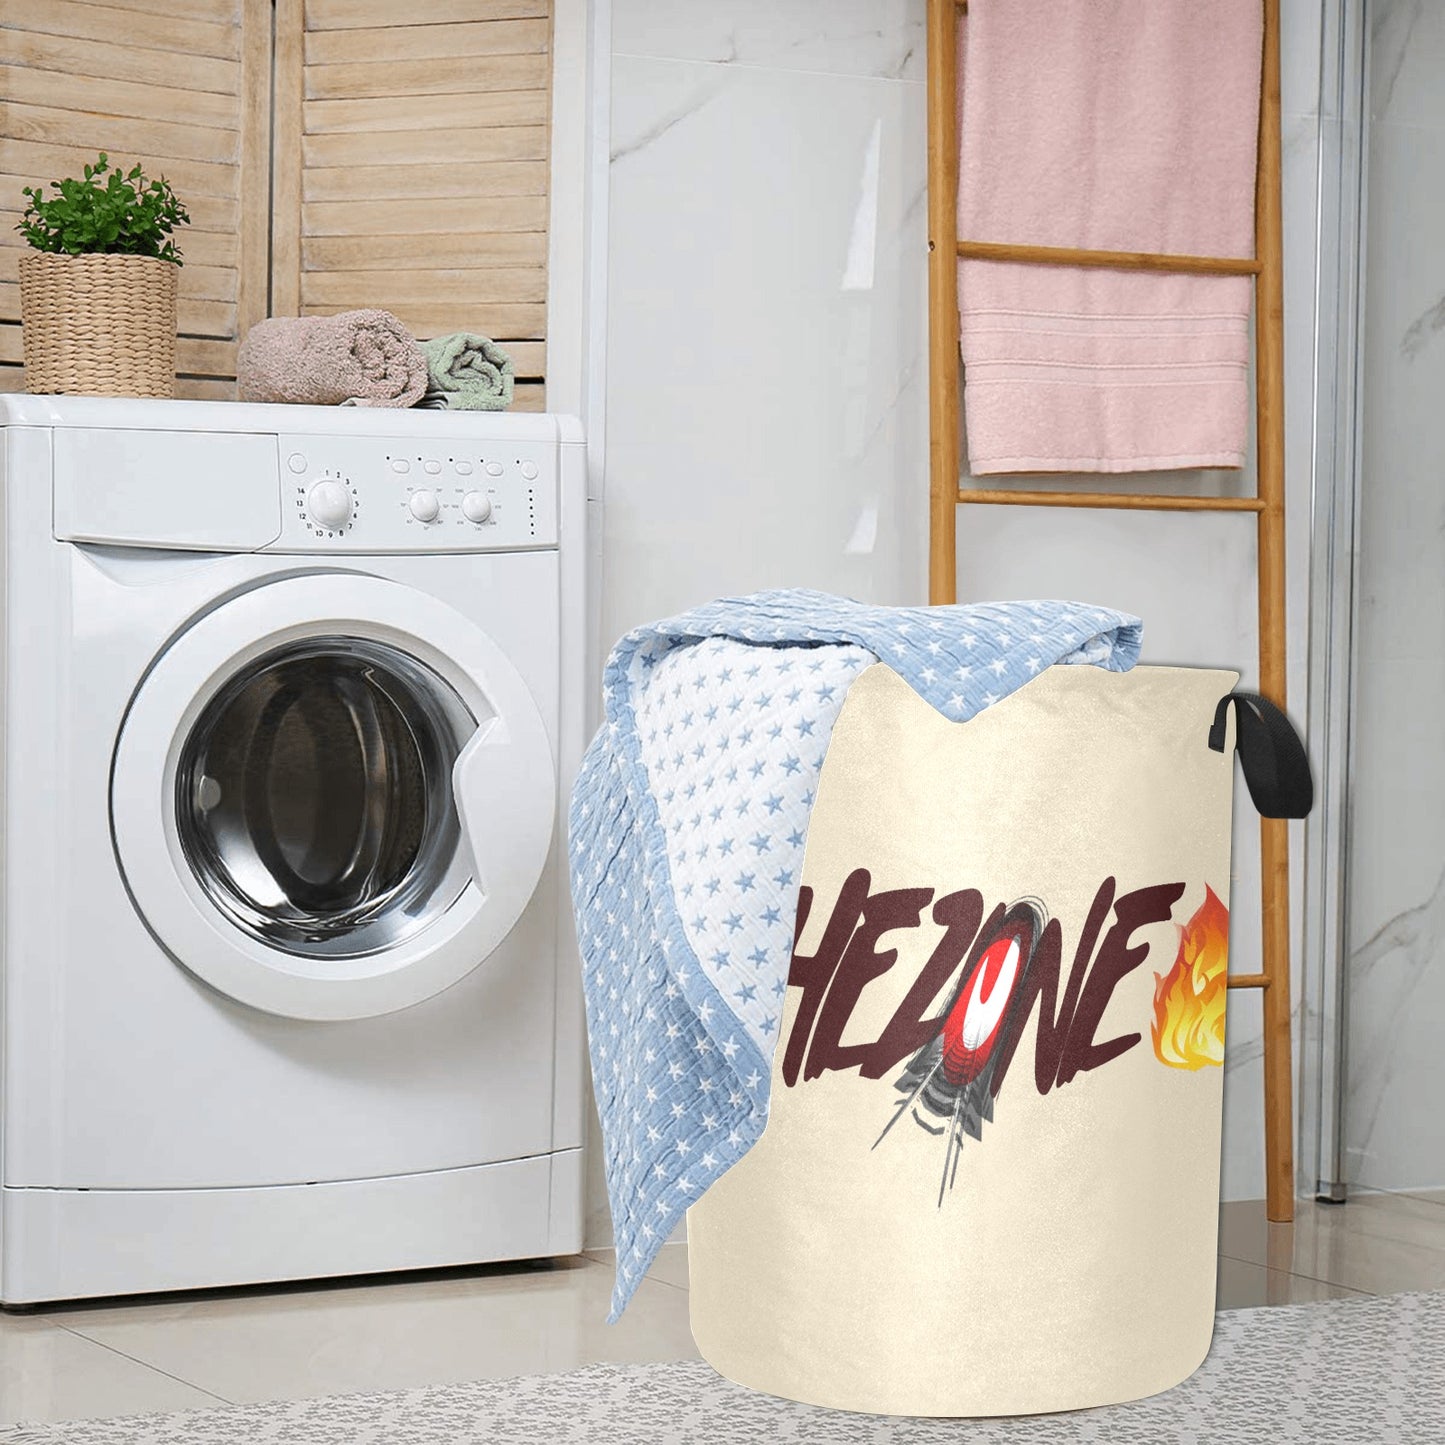 fz laundry basket - large one size / fz laundry basket - creme laundry basket(large)